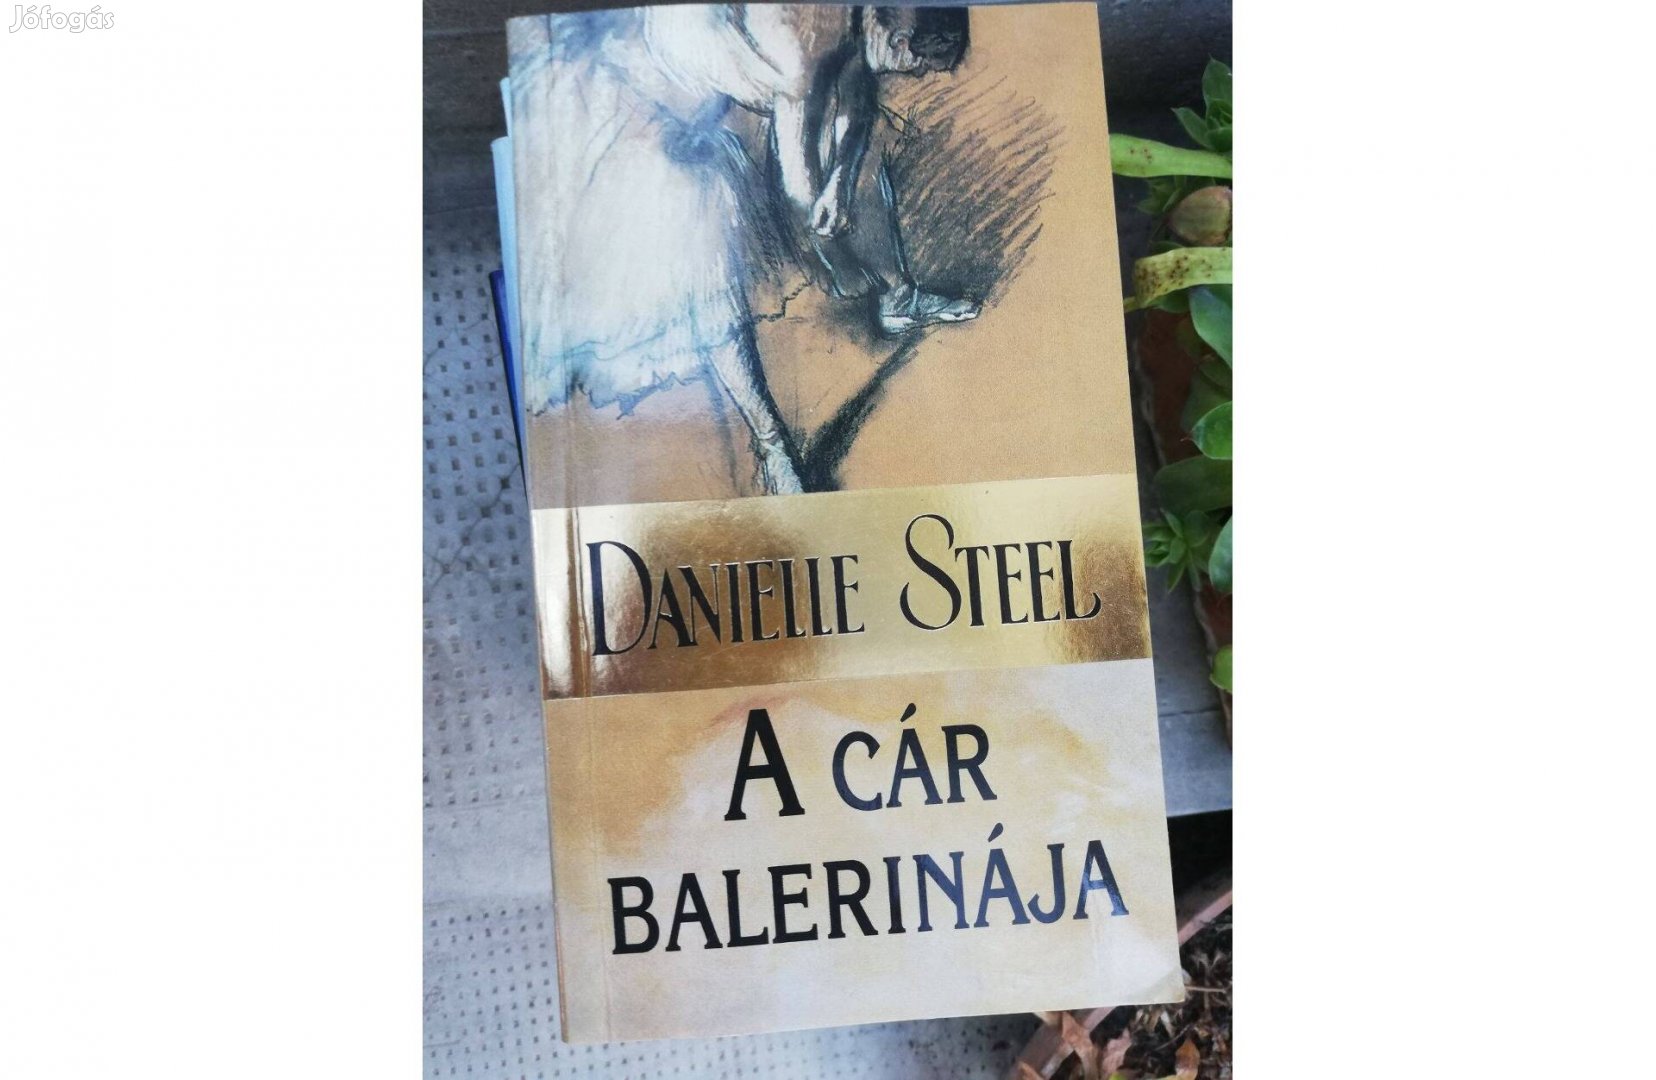 Danielle Steel - A cár balerinája c. könyv 500 forintért eladó